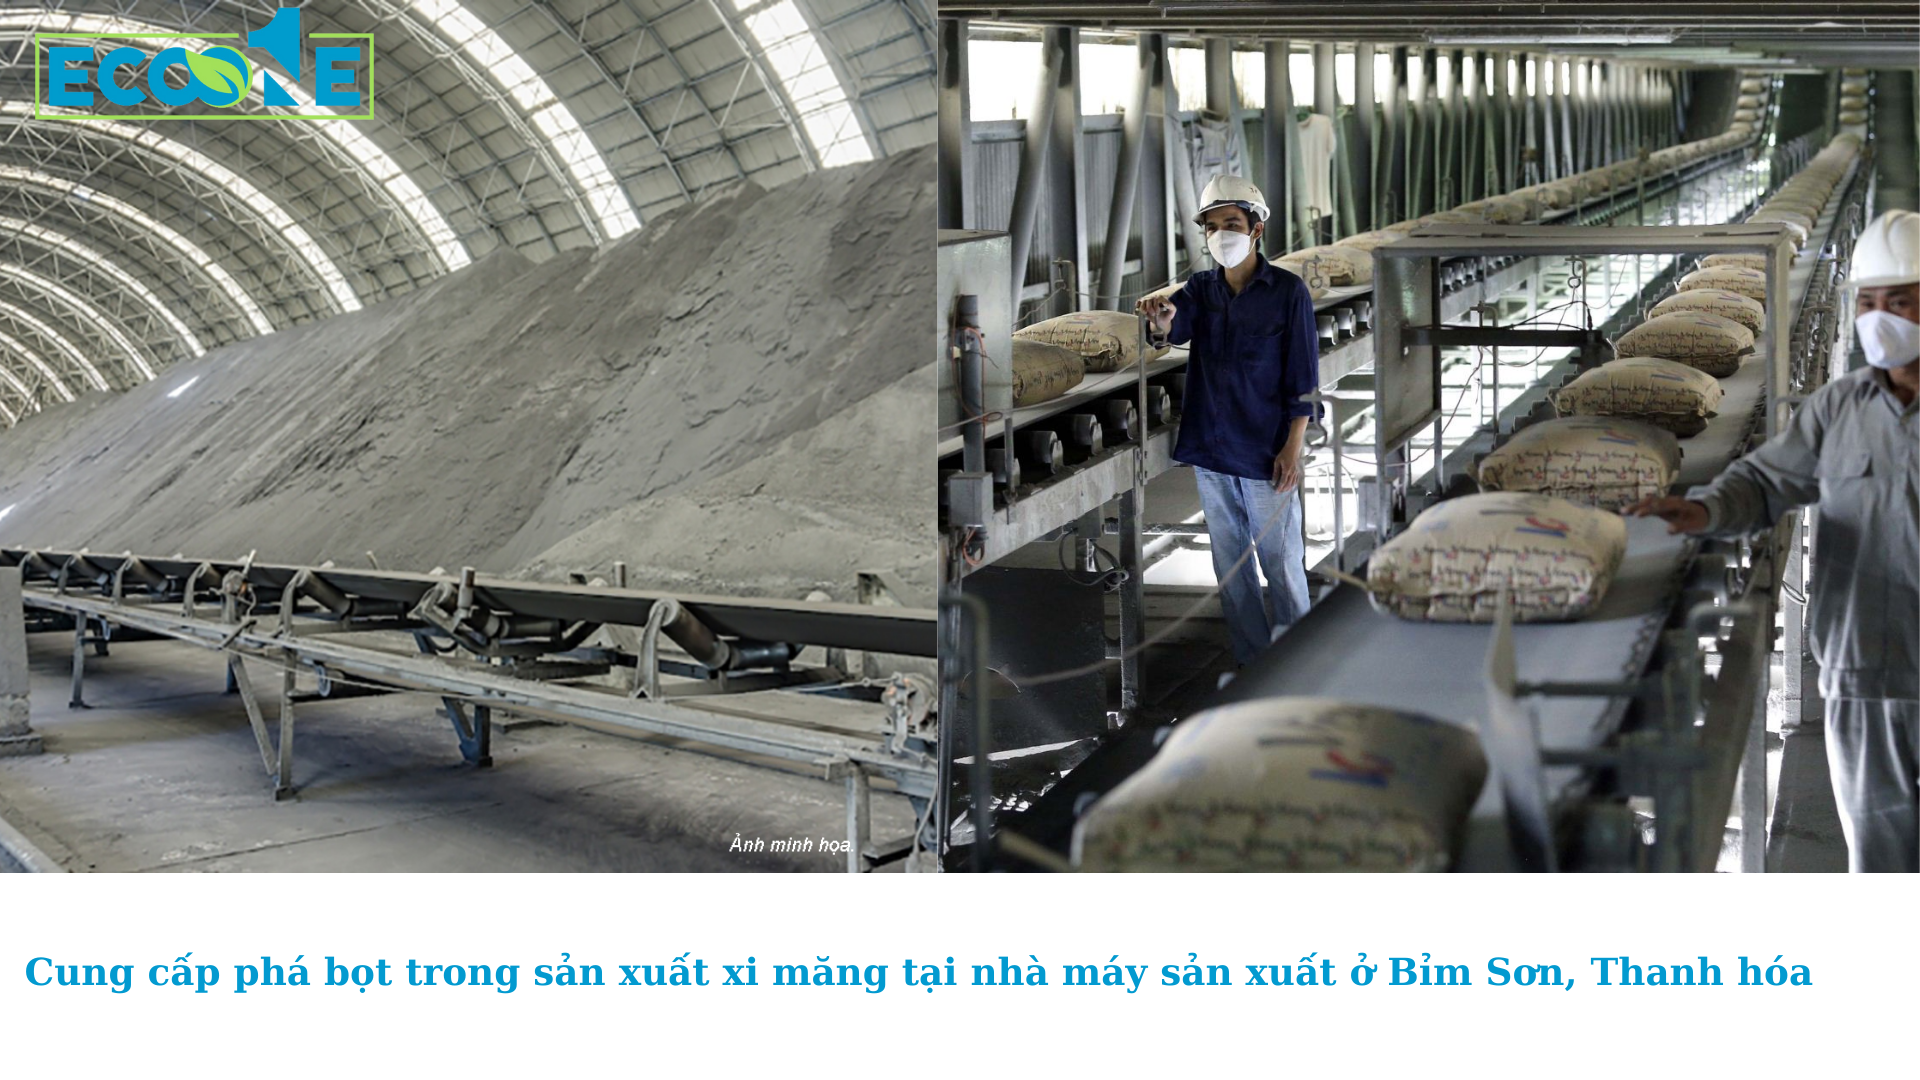 Cung cấp phá bọt trong sản xuất xi măng tại nhà máy sản xuất ở Bỉm Sơn, Thanh hóa